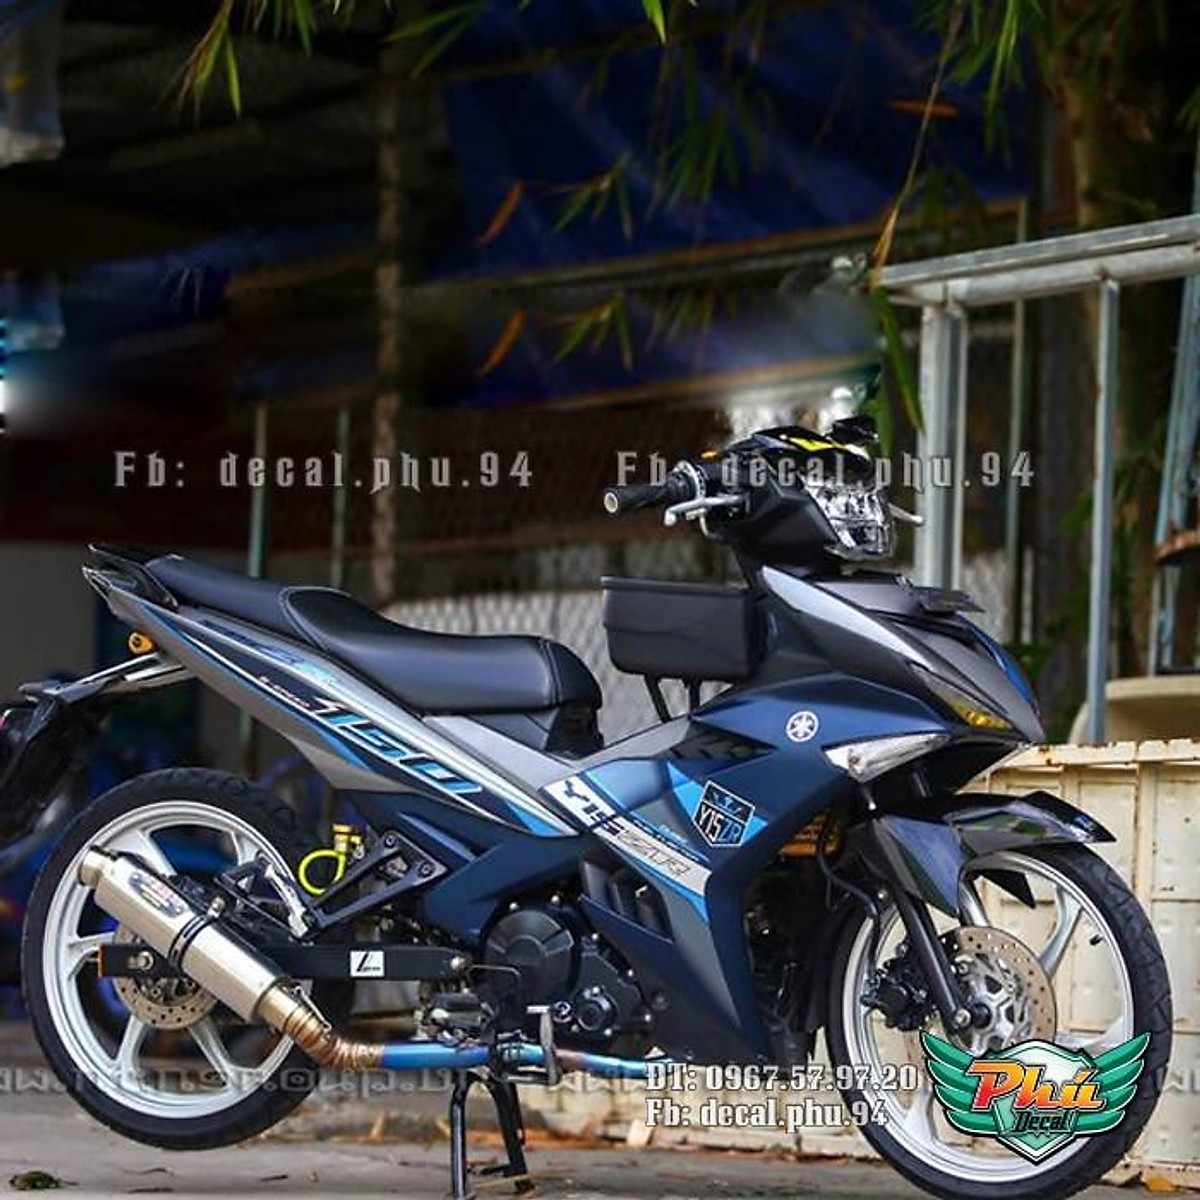 Xe Yamaha Exciter 150 2019  phiên bản Giới hạn  màu Xanh Xám  Exciter150   exciter150limitedxanhxam